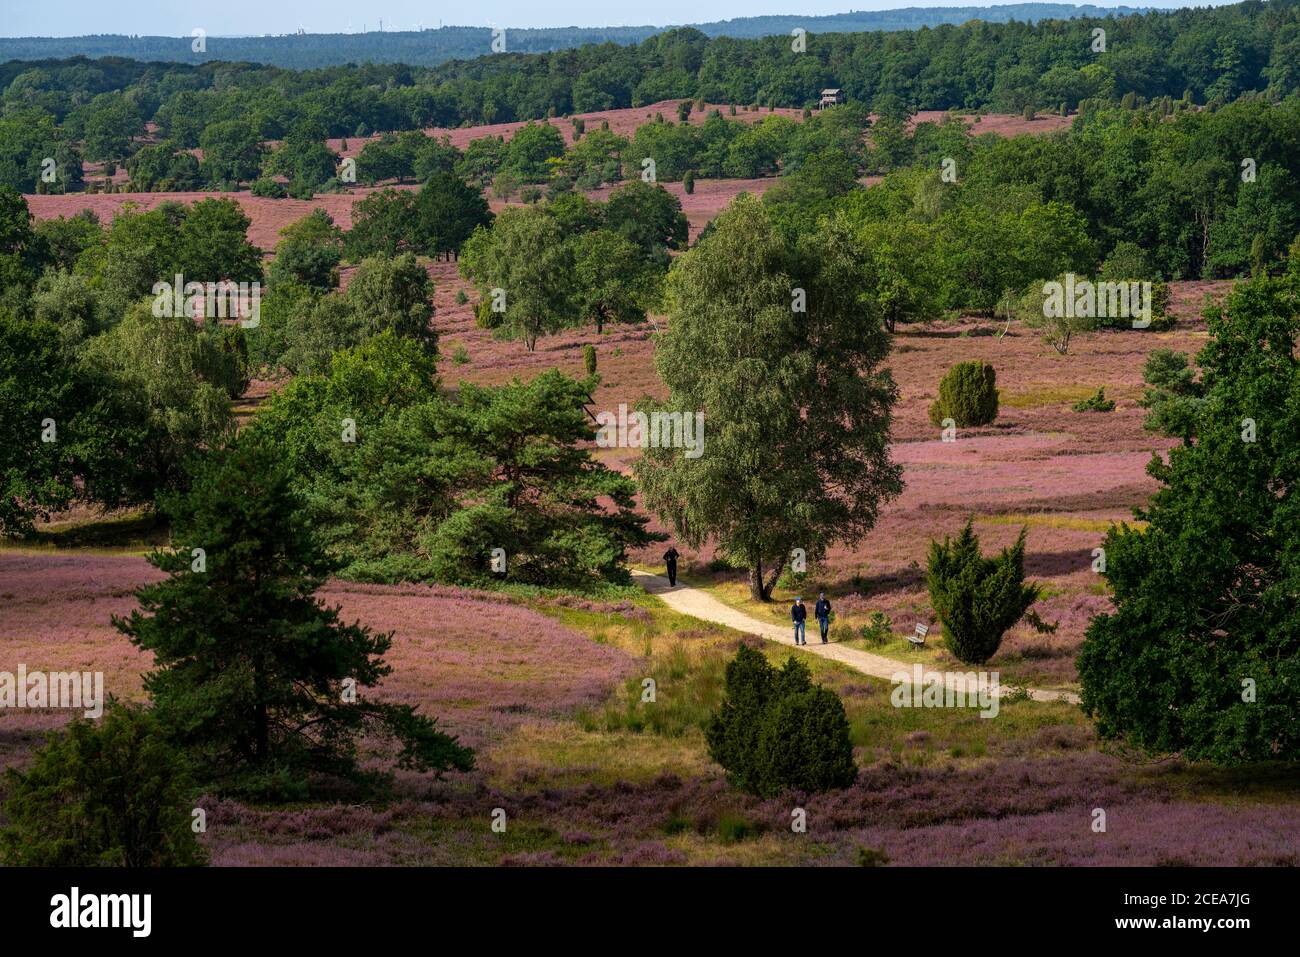 Blühende Heide, Ginsterheide und Wacholderbüsche, bei Wilseder Berg, im Naturschutzgebiet Lüneburger Heide, Niedersachsen, Deutschland, Stockfoto